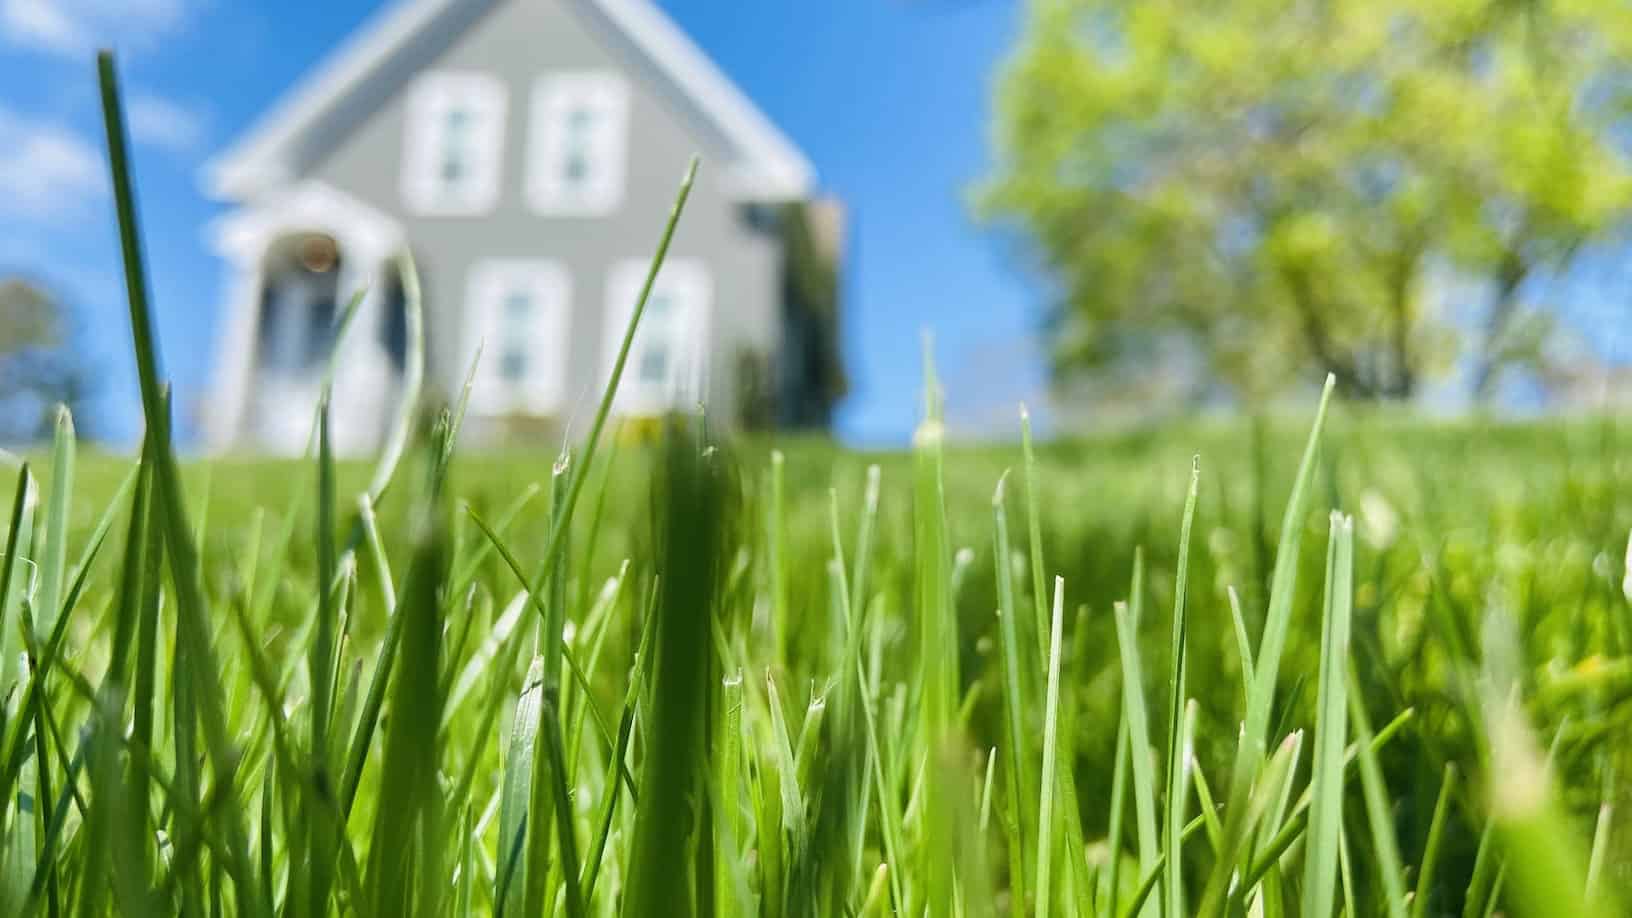 Lawn Care Myths